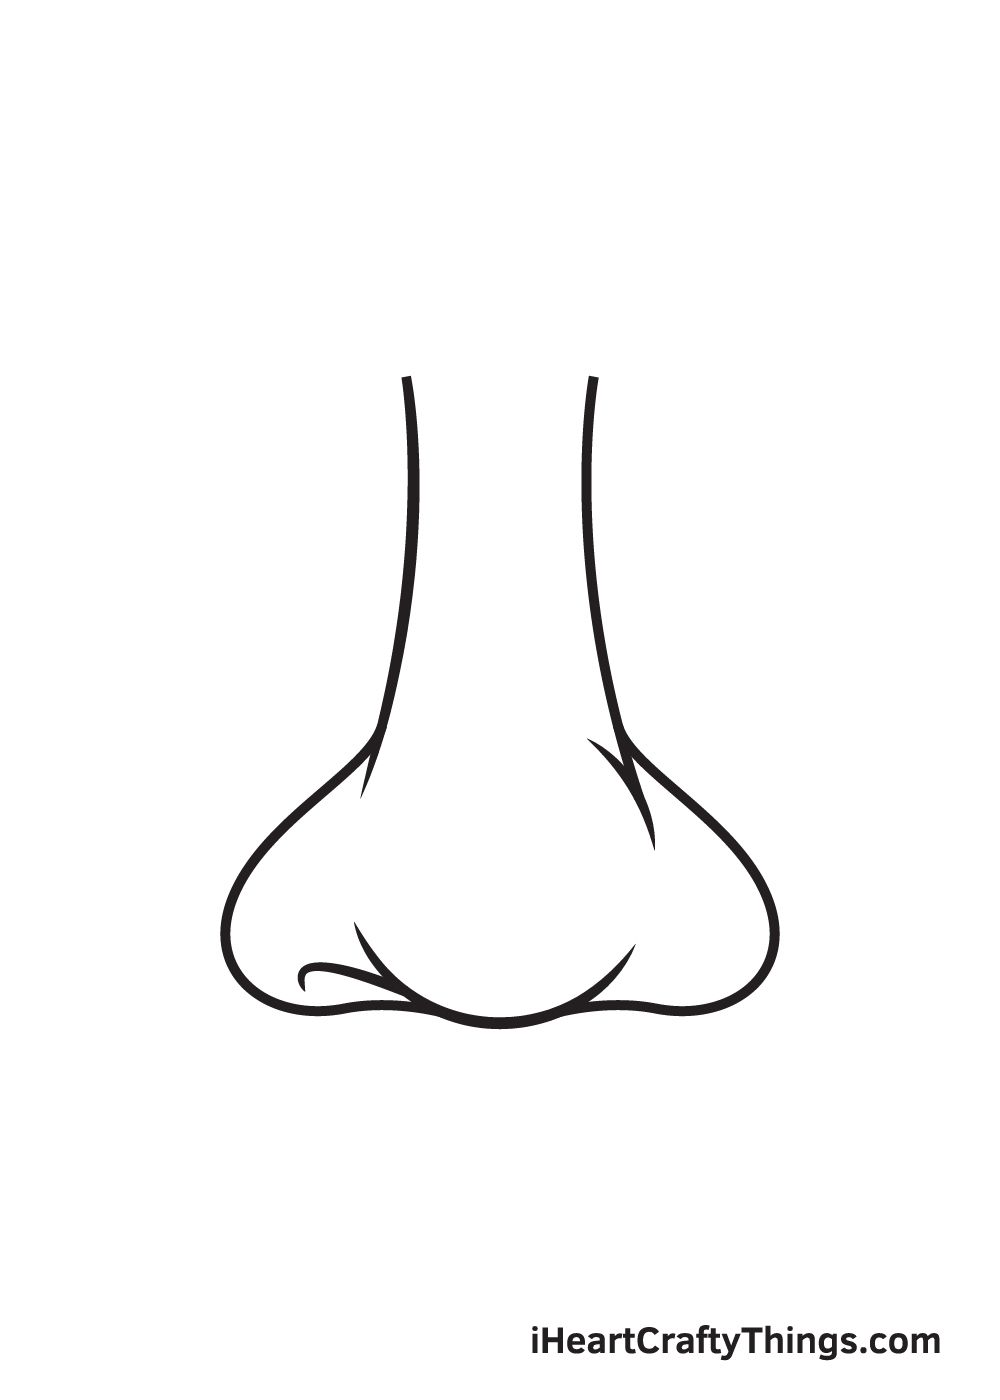 Nose DRAWING – STEP 7 - Hướng dẫn chi tiết cách vẽ mũi đơn giản với 9 bước cơ bản